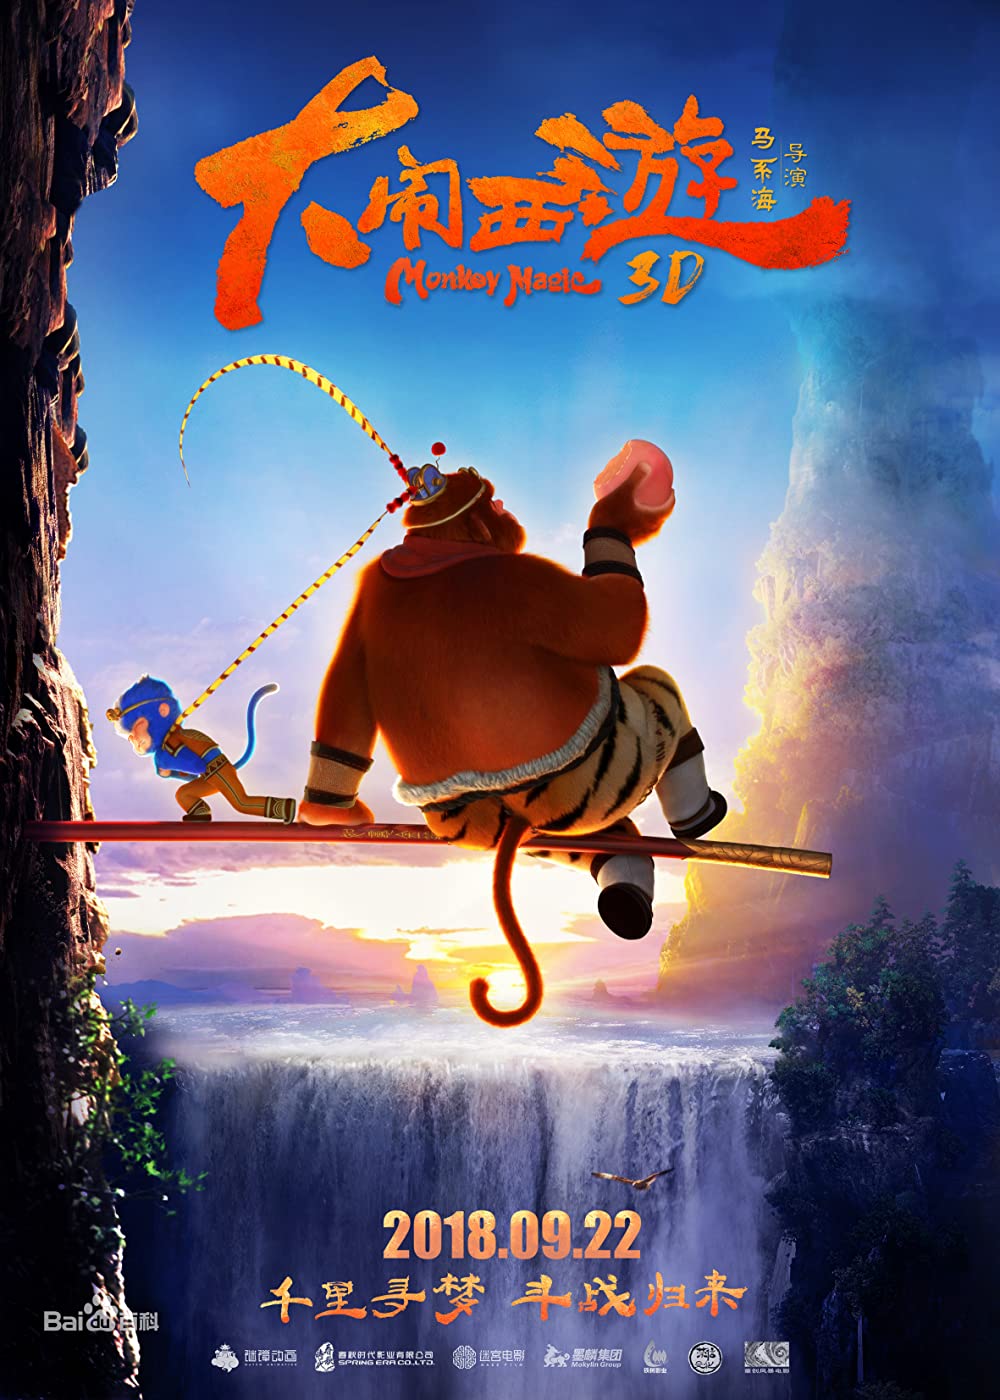 Đại Náo Tây Du – Monkey Magic (2018) Full HD Vietsub